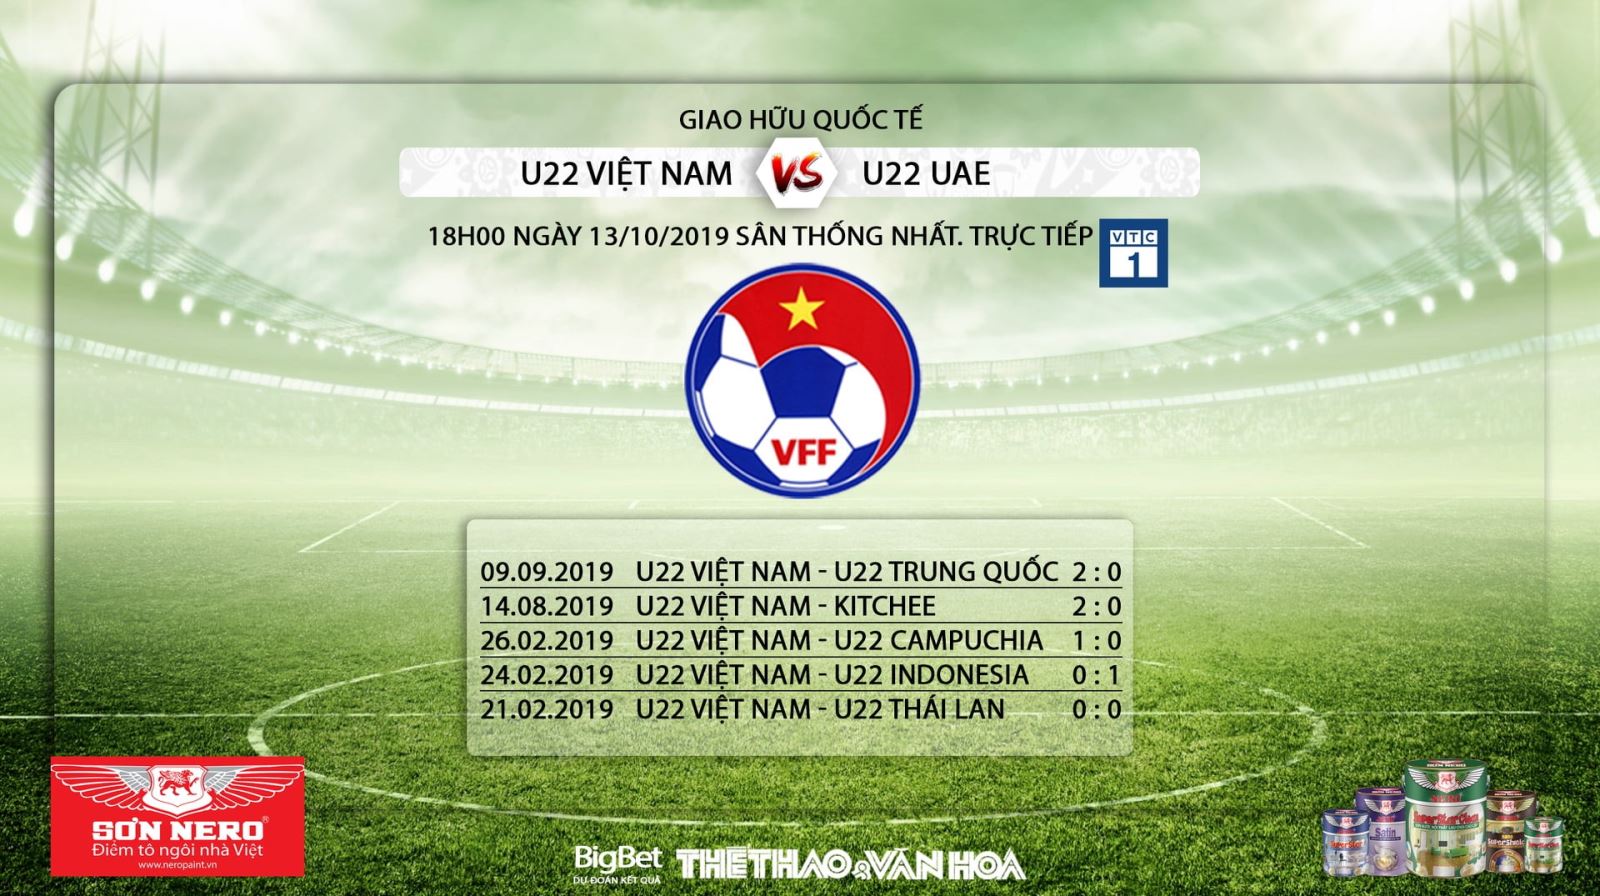 truc tiep bong da hôm nay, U22 Việt Nam vs UAE, trực tiếp bóng đá, U22 VN vs U22 UAE, VTC1, VTC3, VTV6, VTV5, xem bóng đá trực tuyến, U22 Việt Nam đấu với UAE, bong da